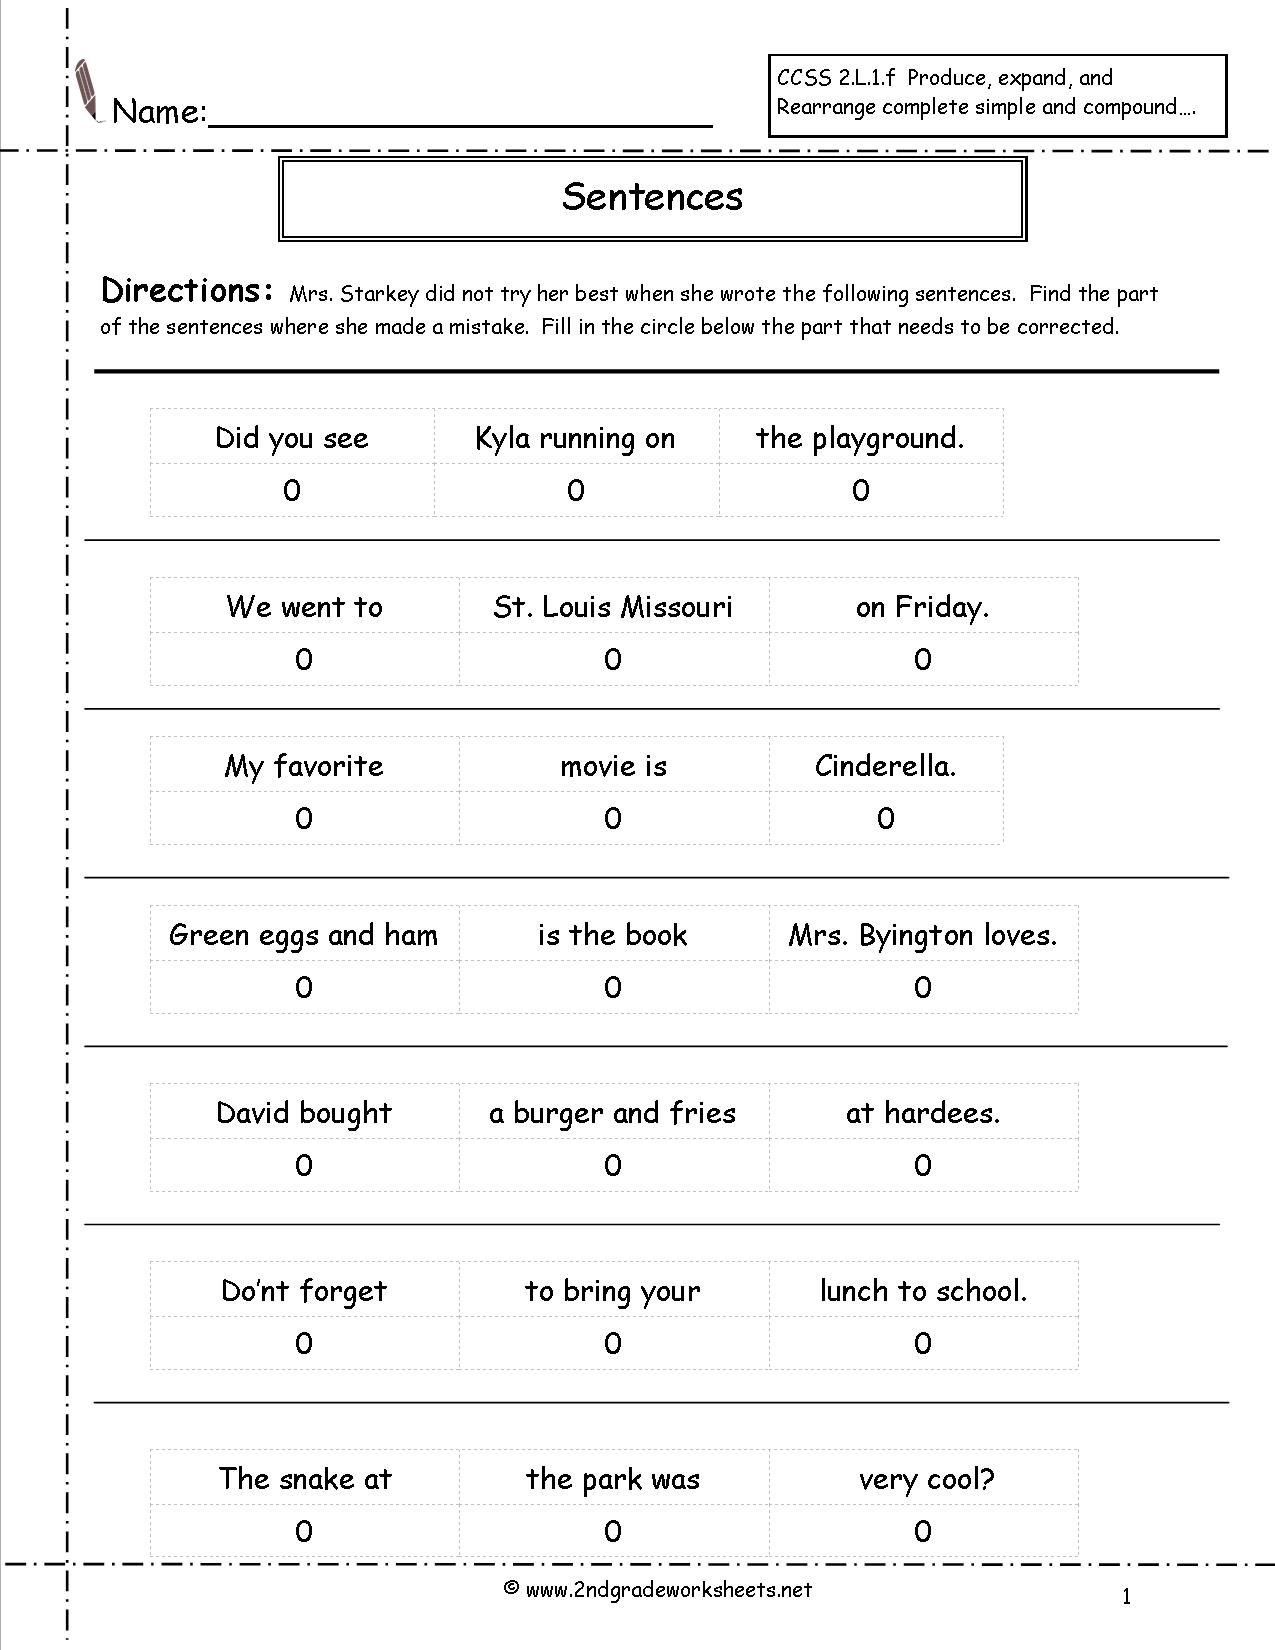 15 Best Images of 2nd Grade Sentence Correction Worksheets ...